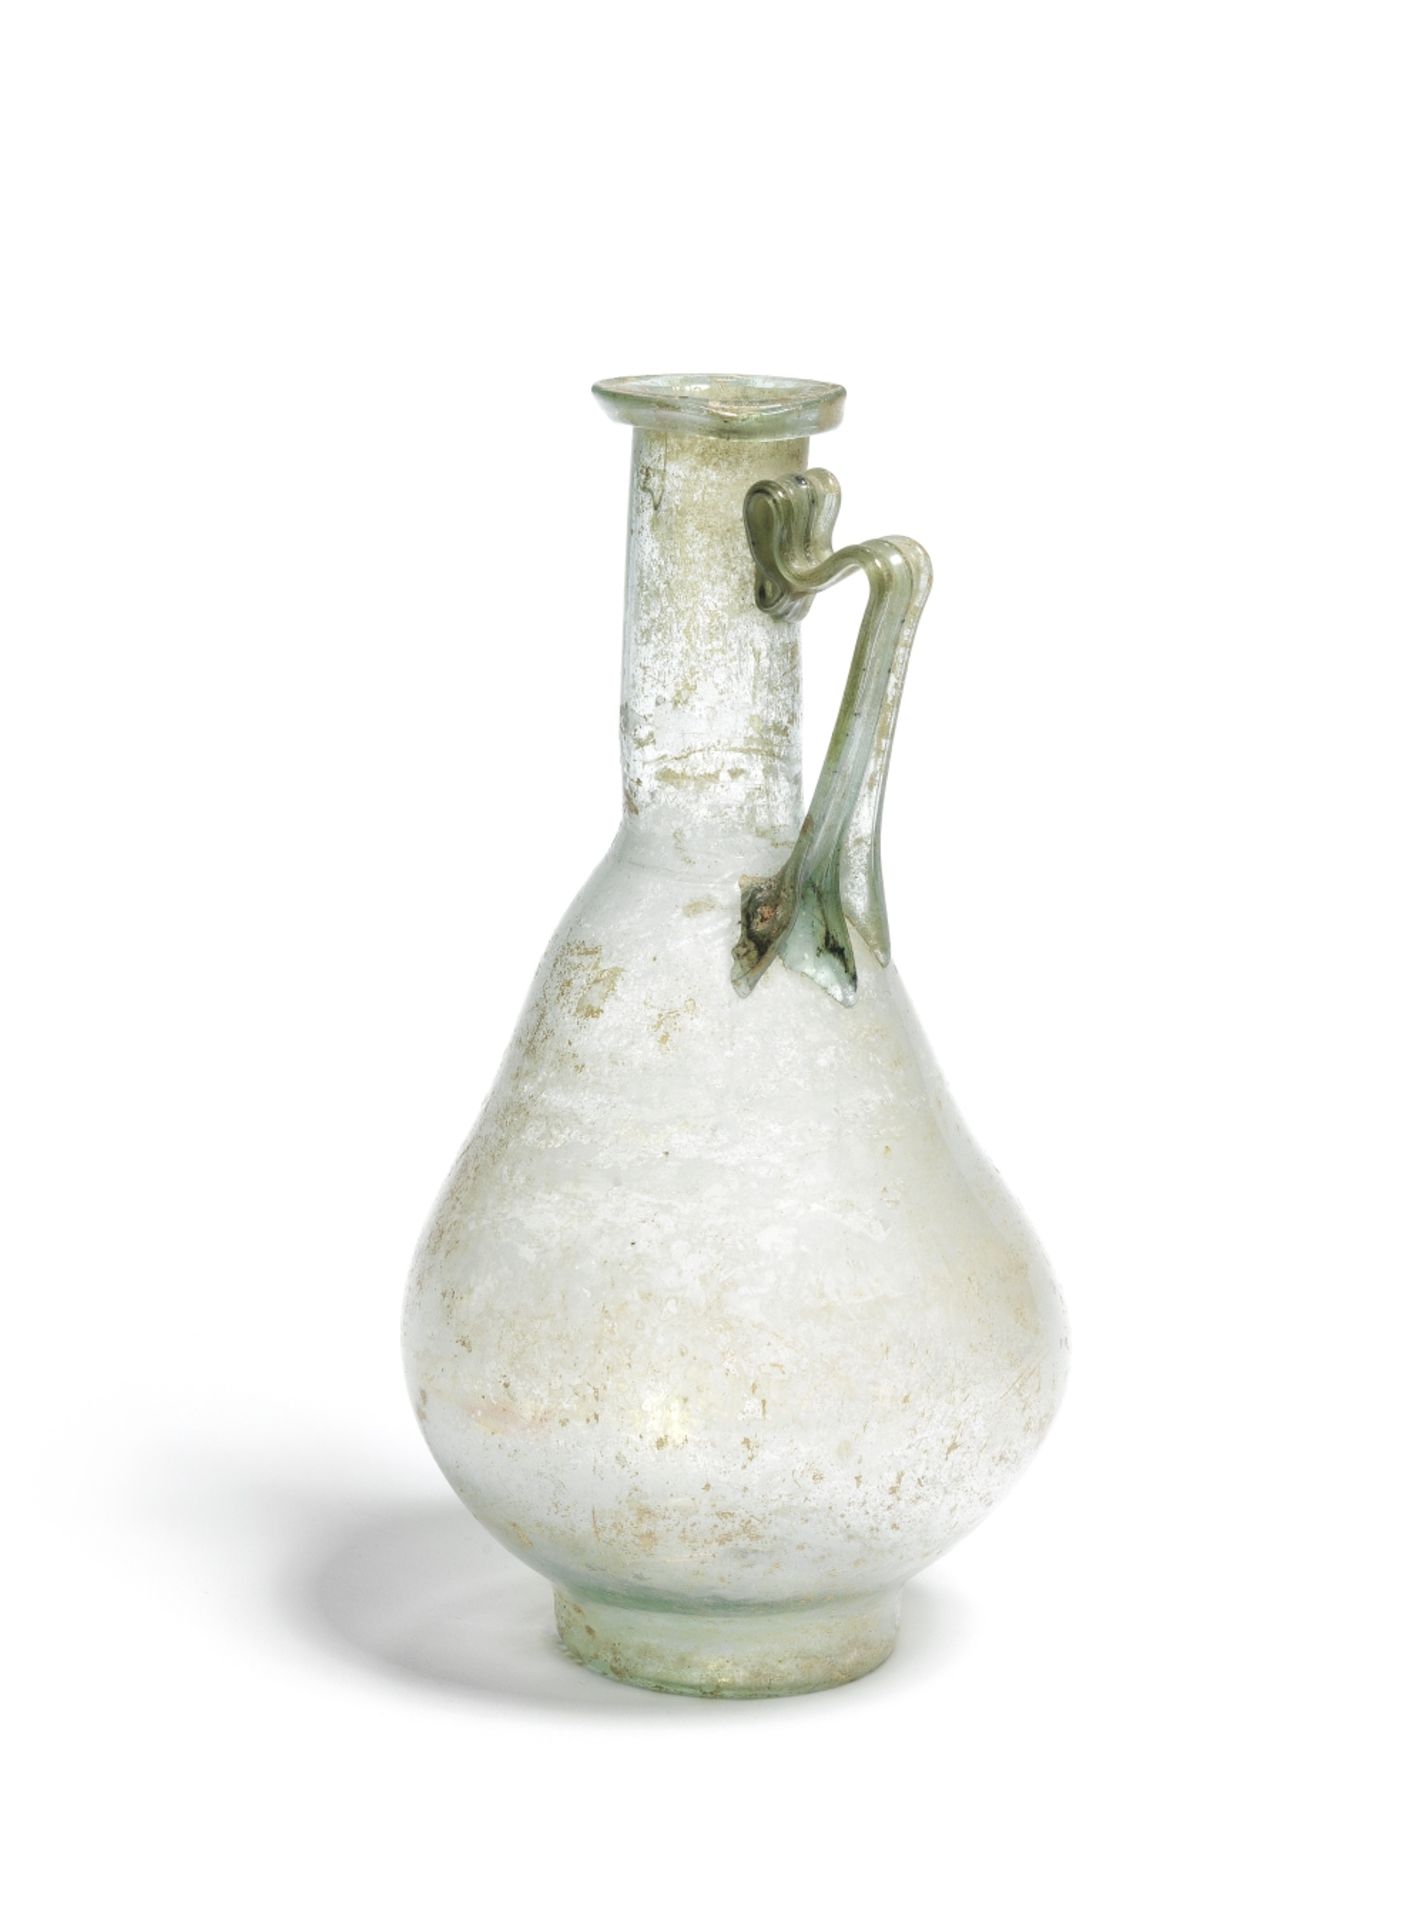 A Roman blue-green glass jug